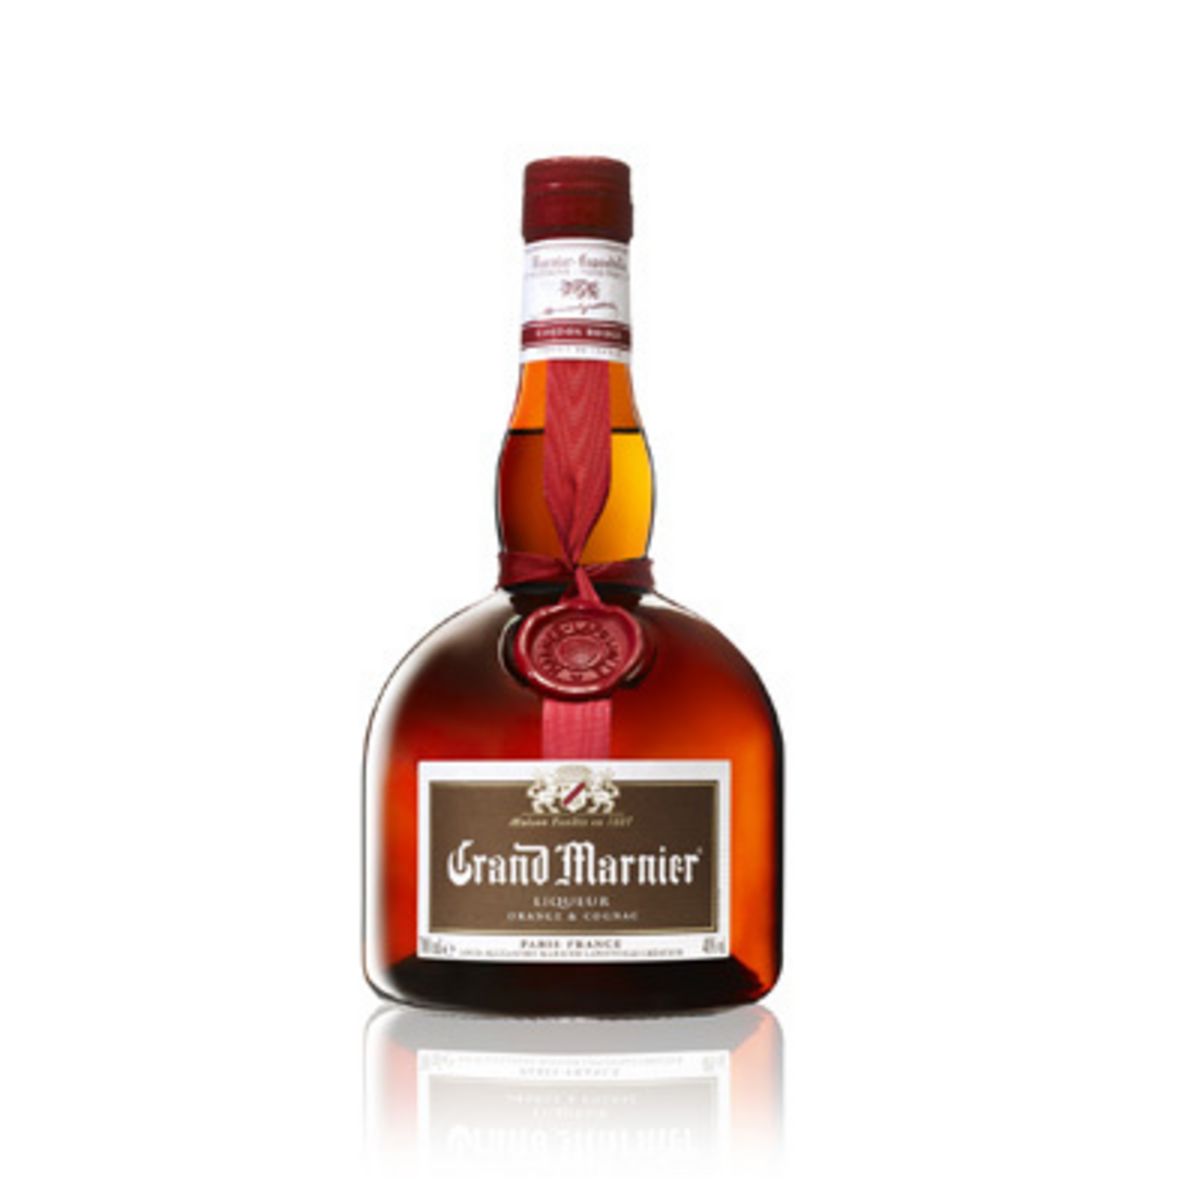 GRAND MARNIER Cordon Rouge Liqueur cognac et orange 40% 70cl